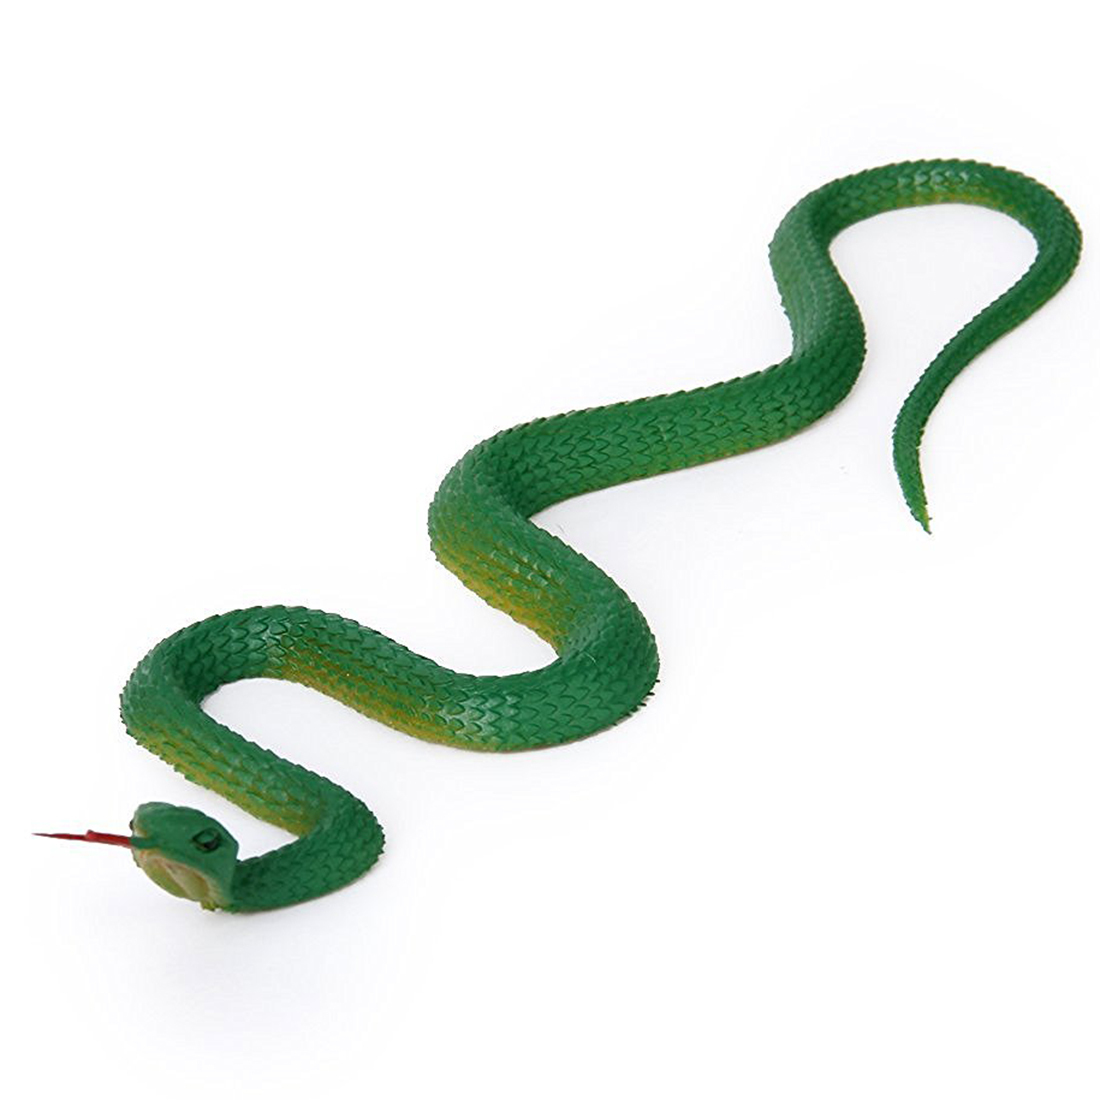 Где можно купить змей. Резиновая змея гадюка. Питон резиновая змея. Резиновая змея игрушка. Пластиковая игрушка змея.